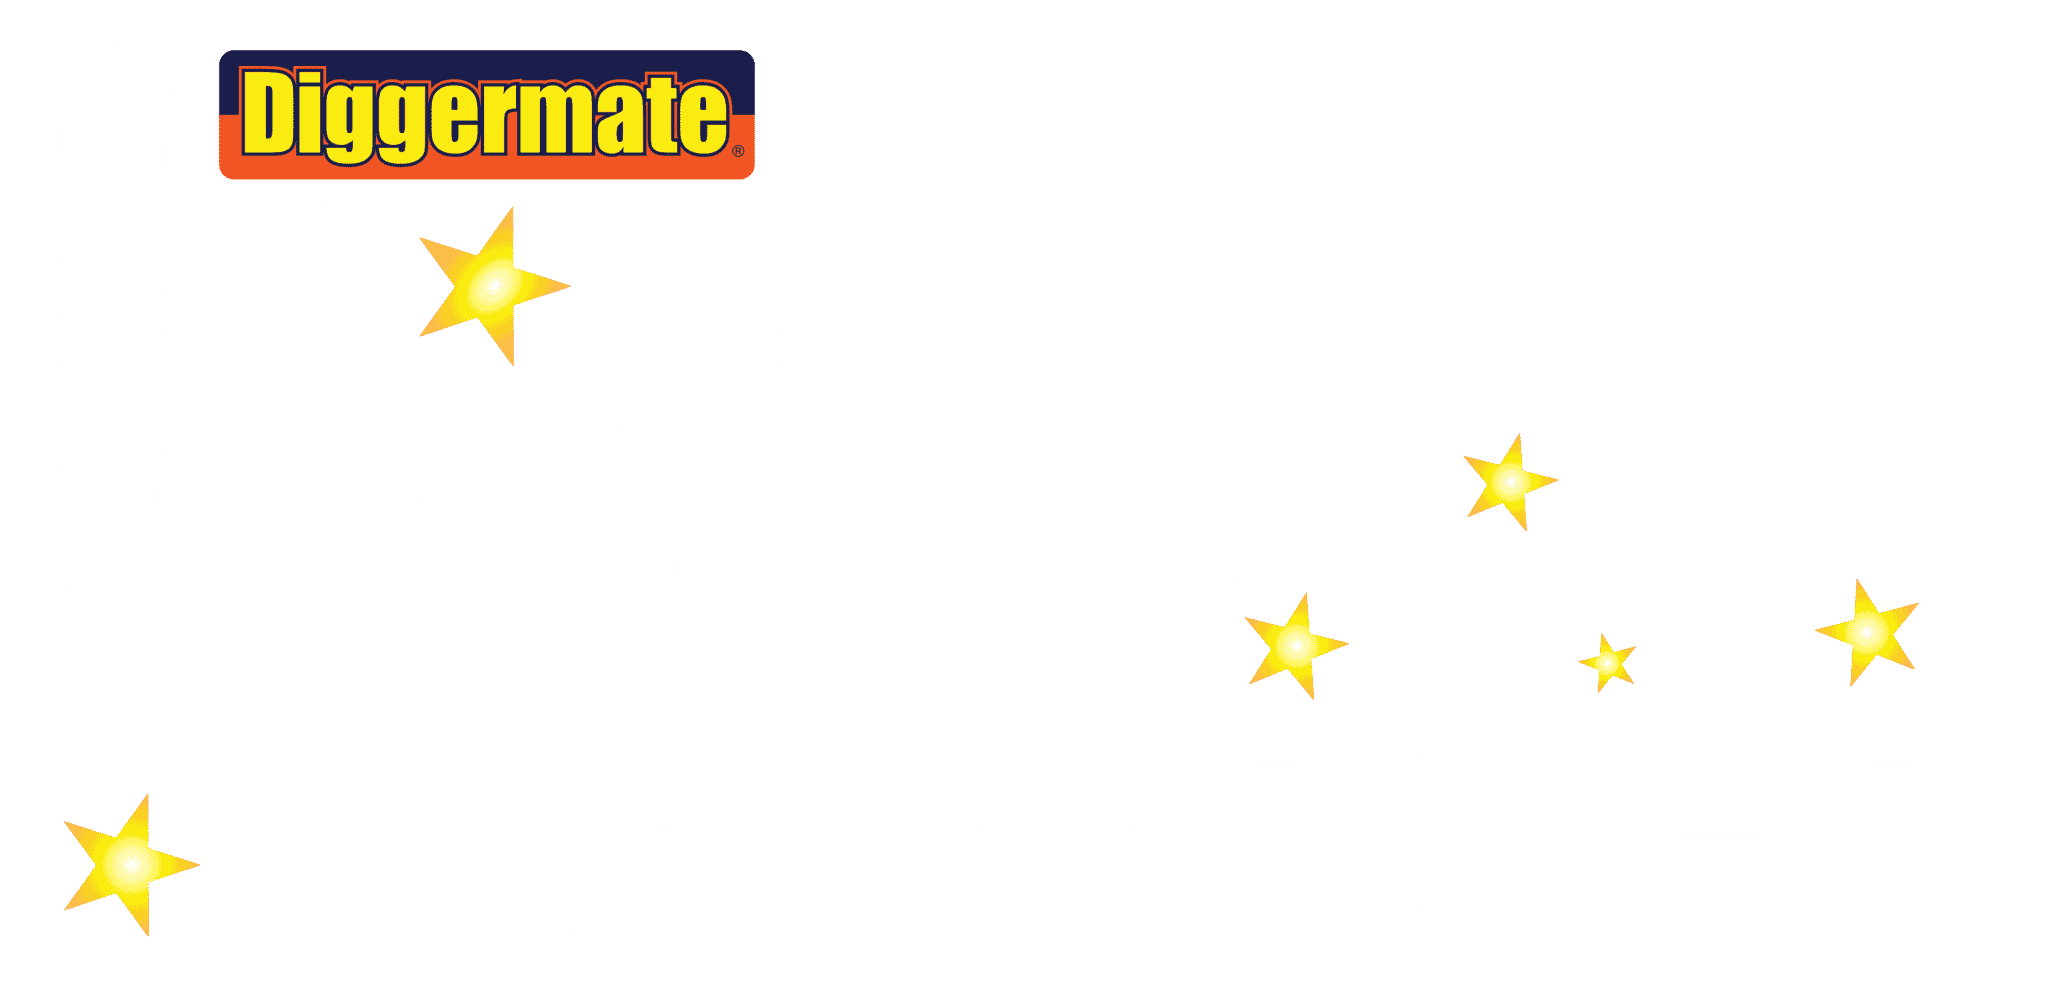 diggermate kids corner logo